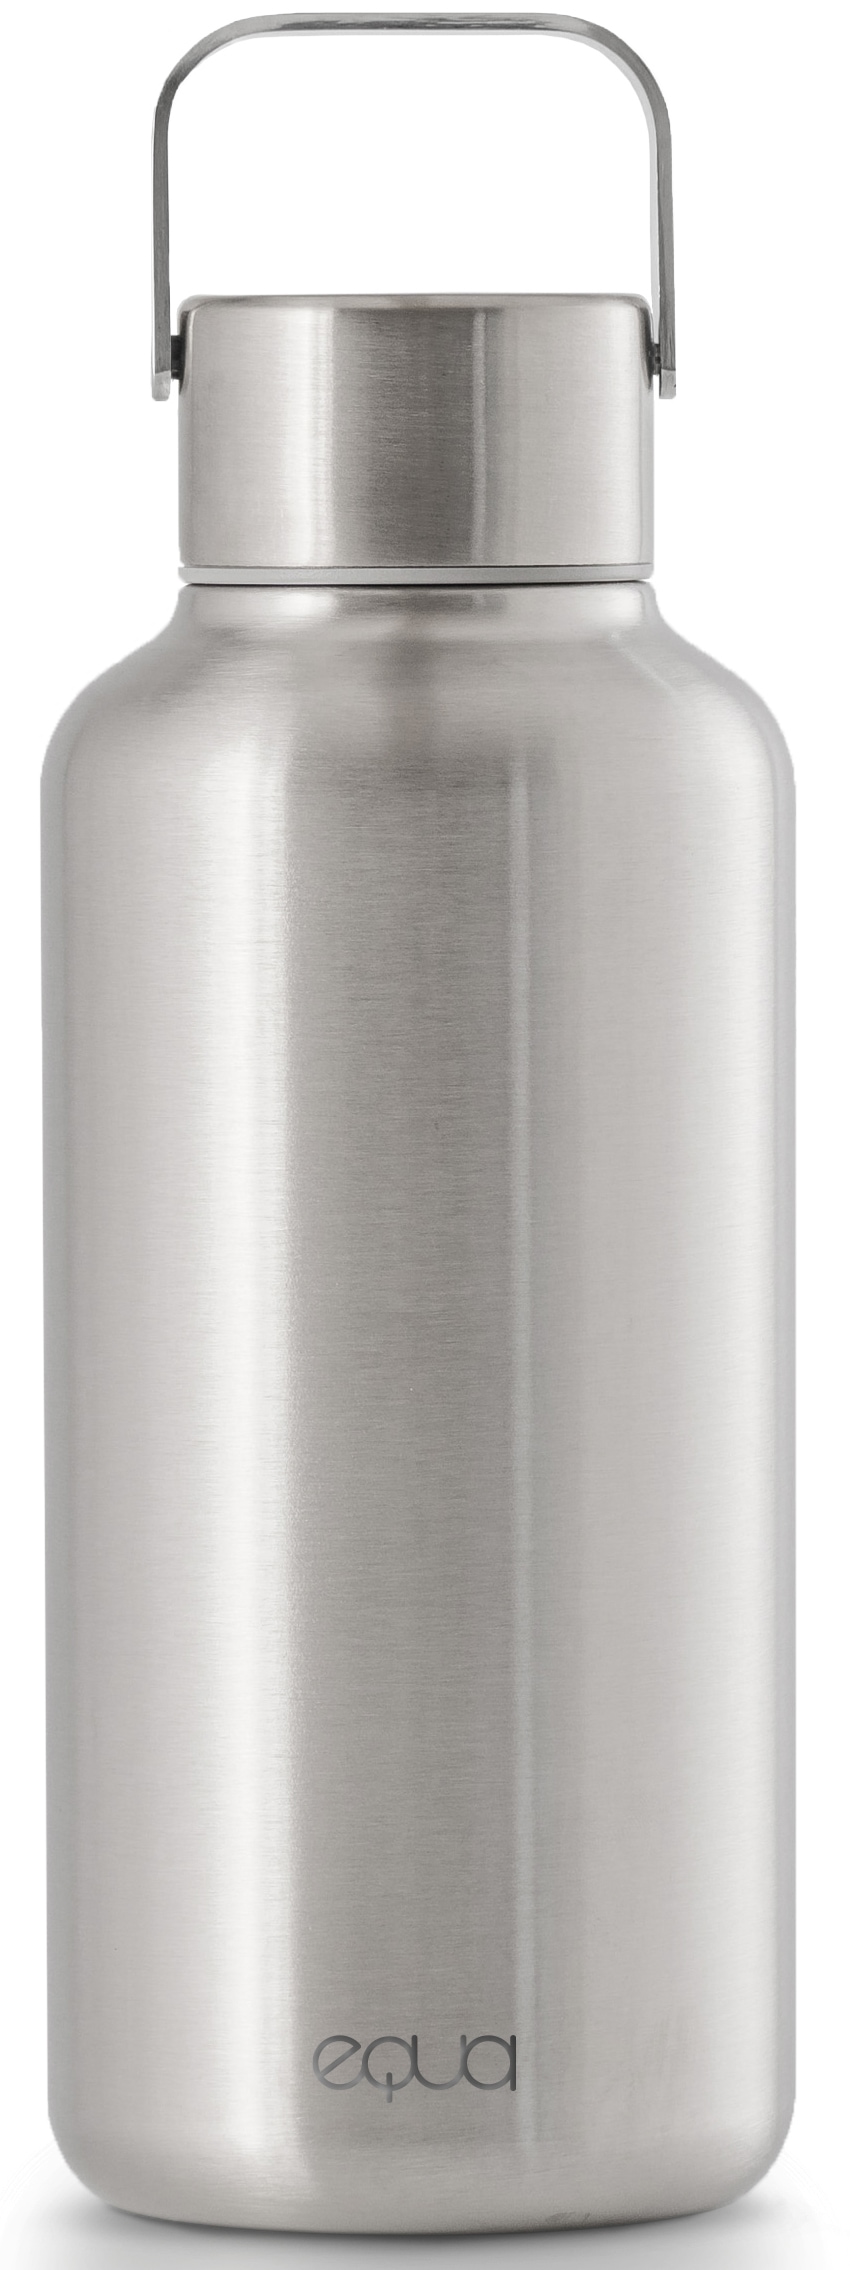 equa Trinkflasche »Timeless Off Steel«, Trinkflaschen-Leichtgewicht aus Edelstahl, mit Tragegriff